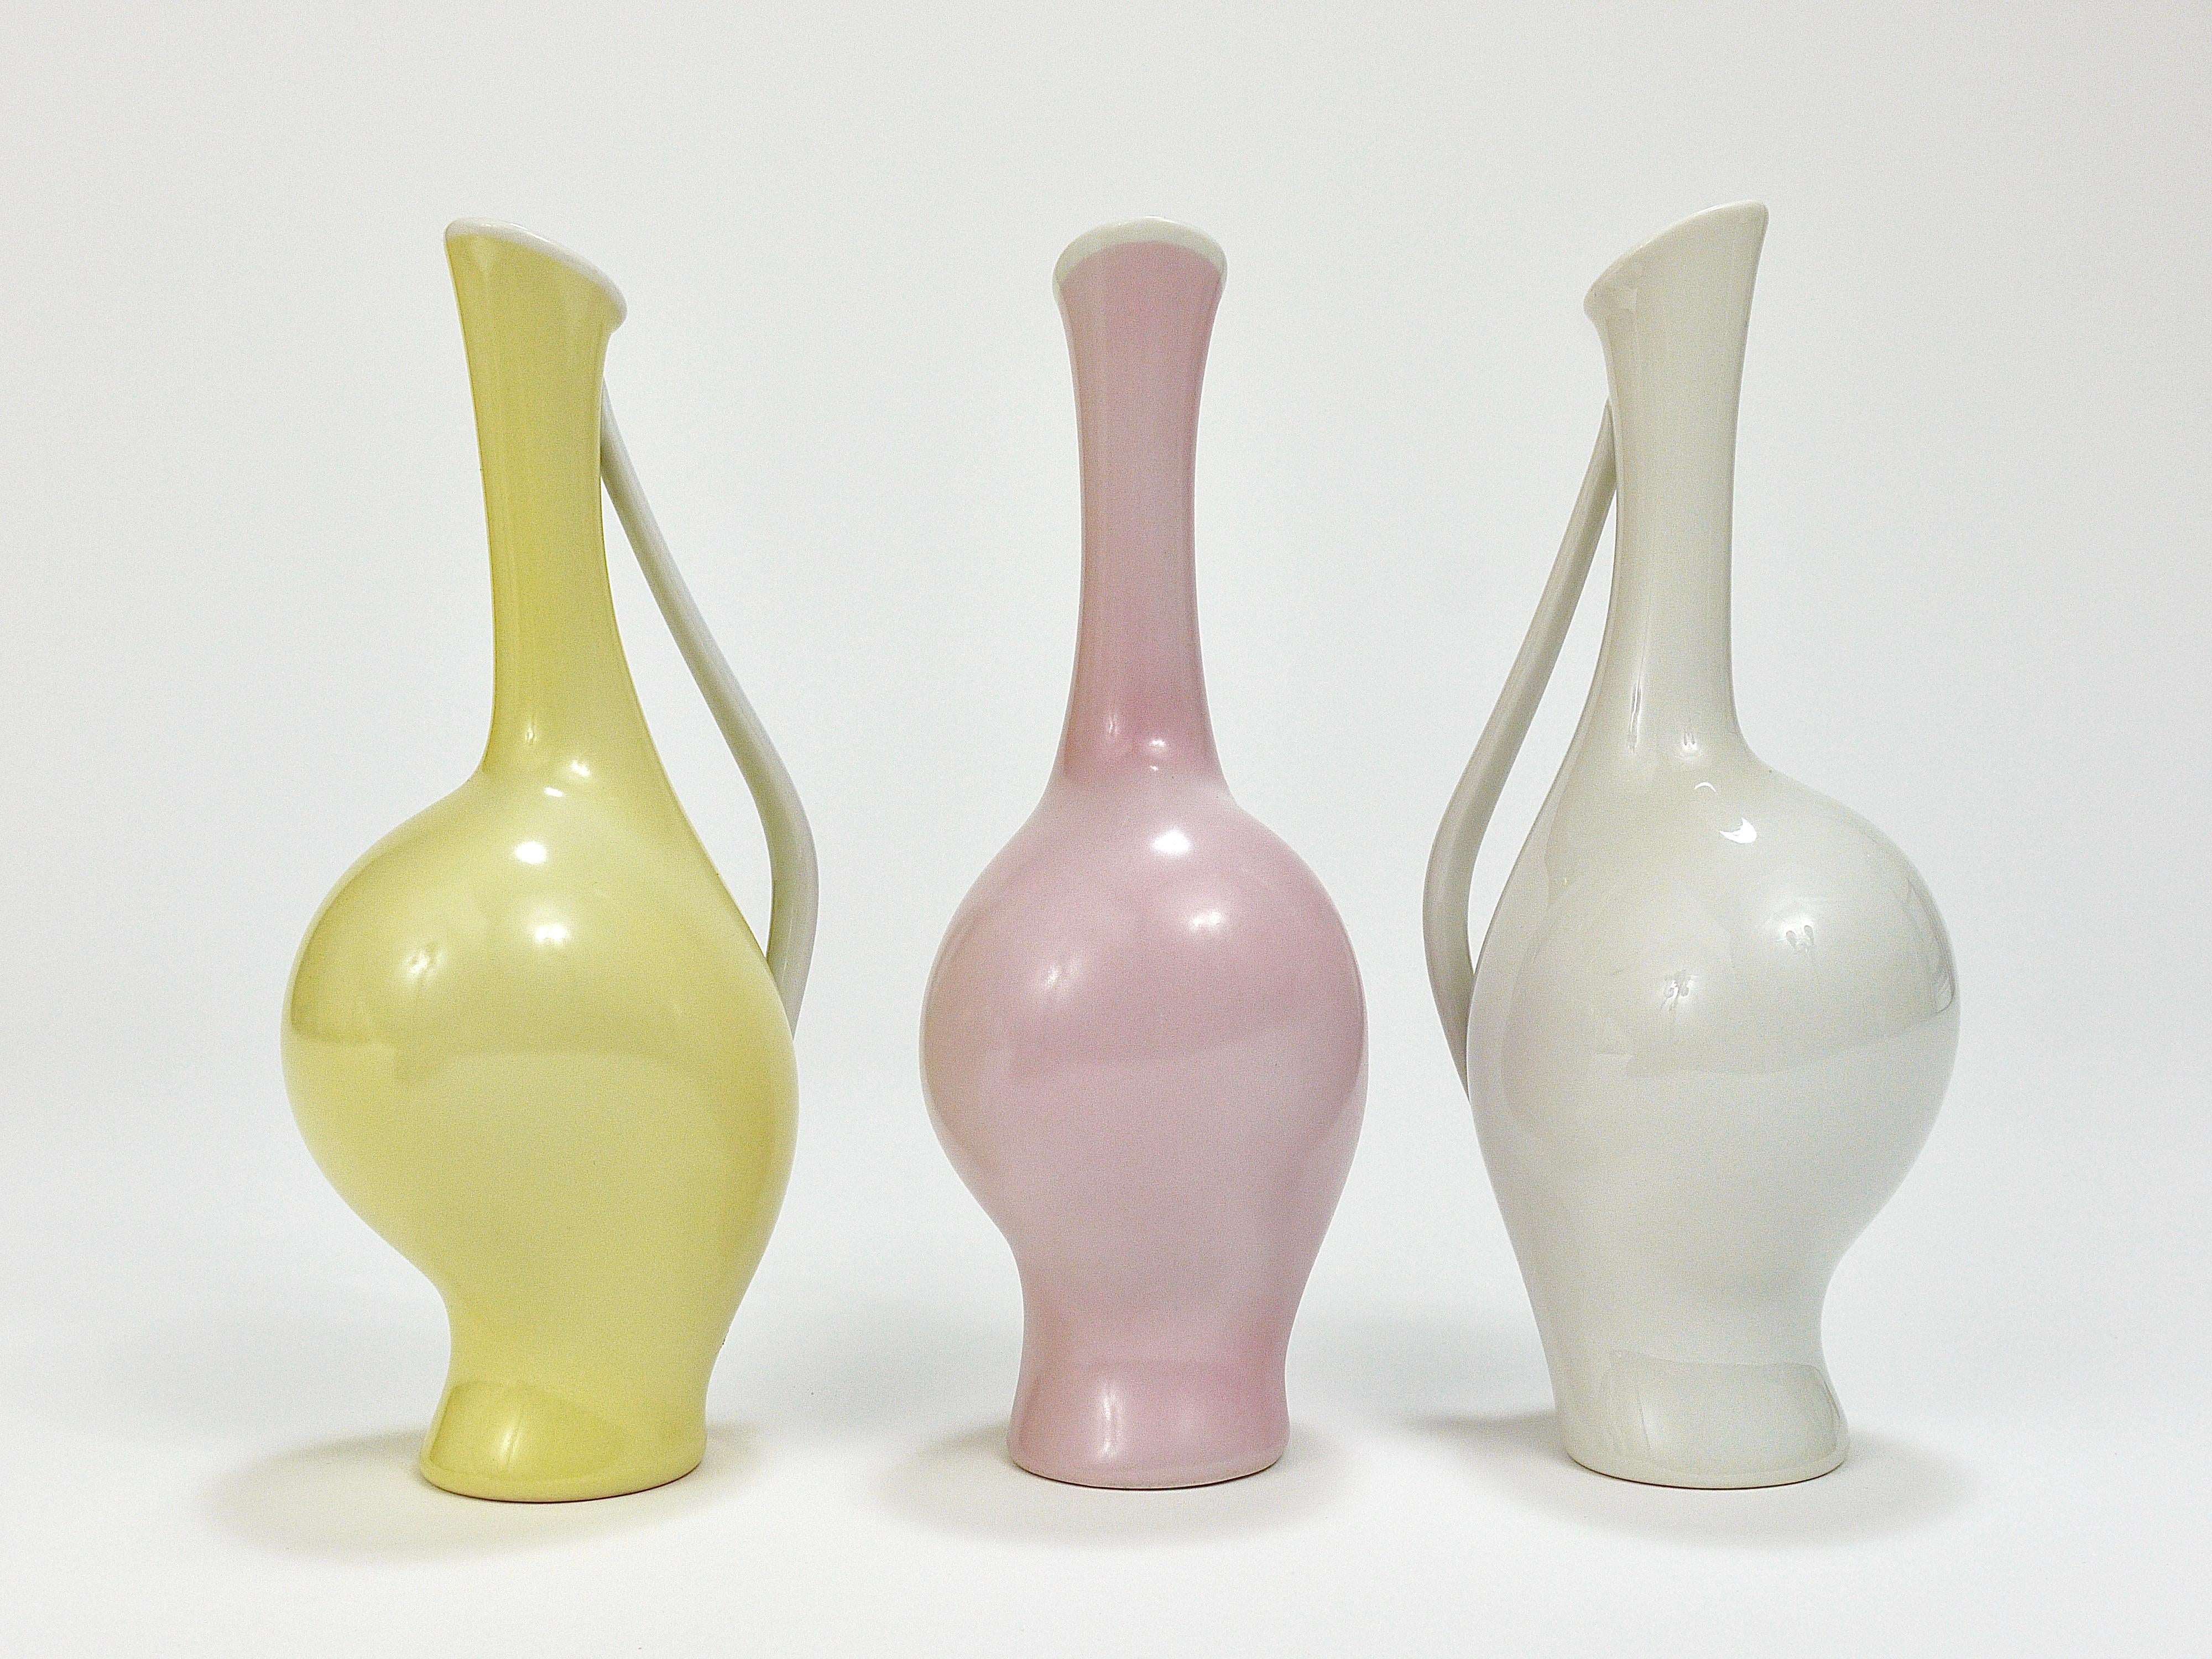 Jusqu'à trois jolis vases du milieu du siècle dernier, datant des années 1950. Conçue par Fritz Heidenreich et exécutée par Rosenthal Allemagne, Kunstabteilung Selb.
En porcelaine / china, disponible en trois couleurs différentes : blanc, rosé /